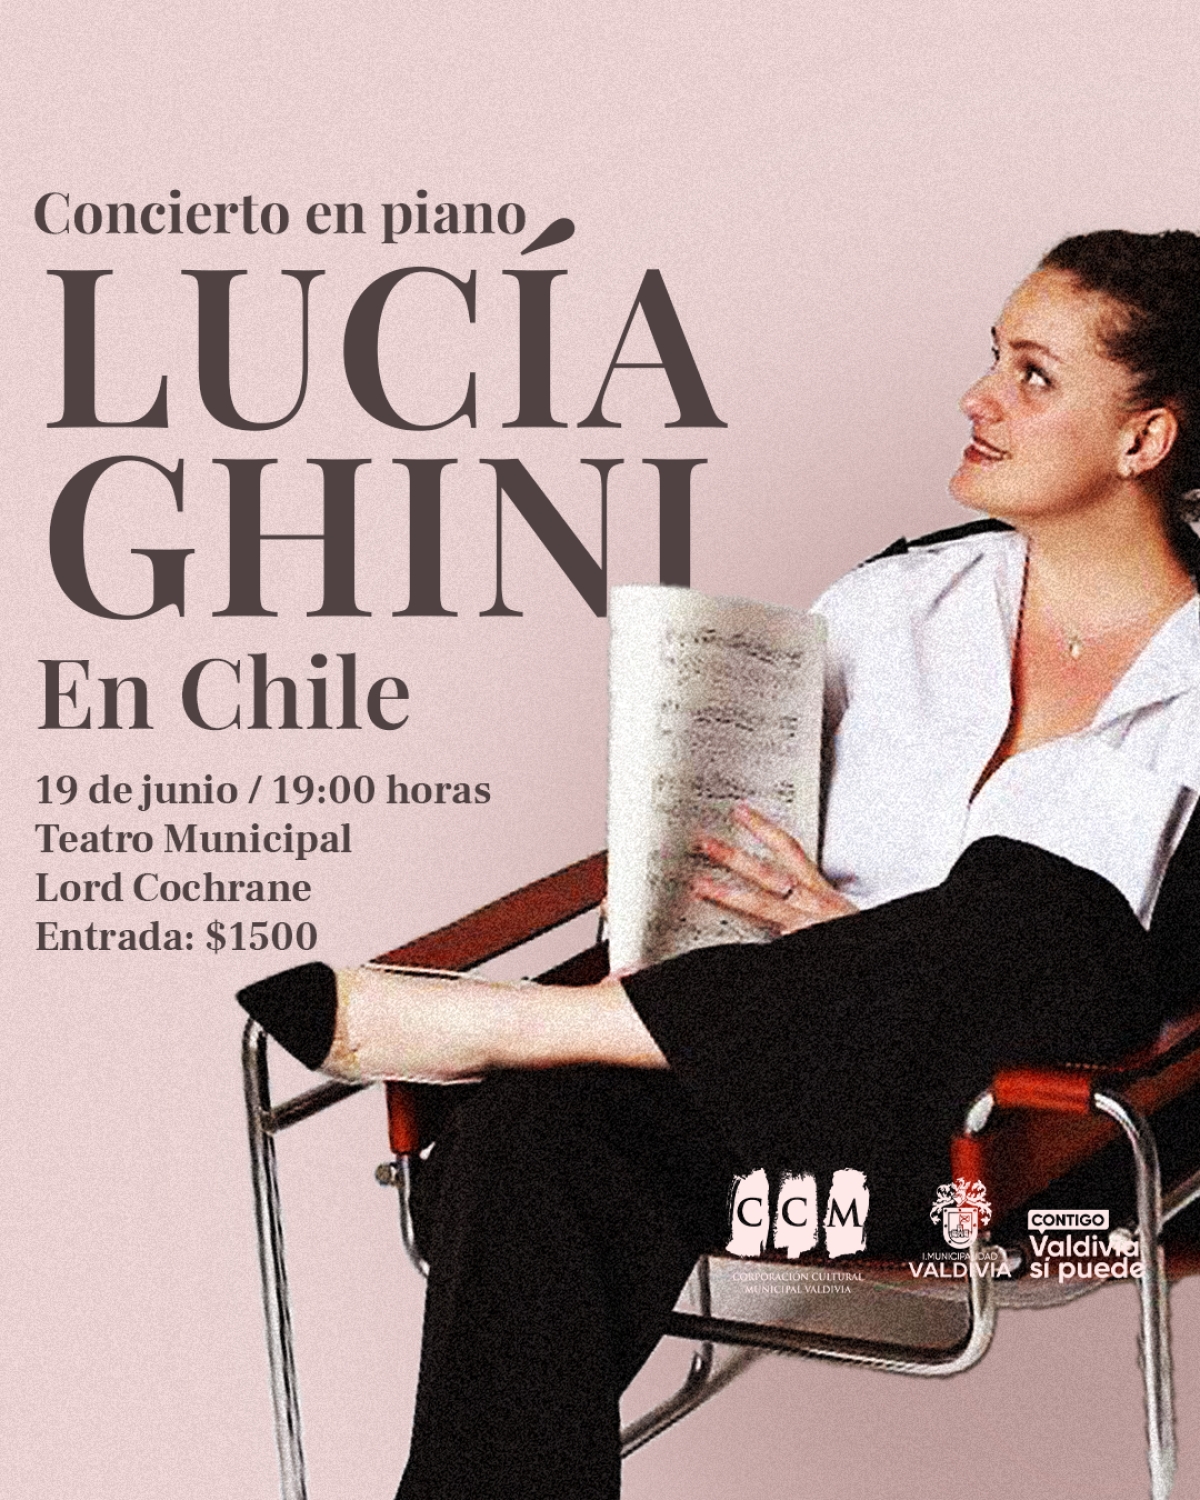 Lucía Ghini ofrecerá concierto de piano en el Teatro Municipal de Valdivia